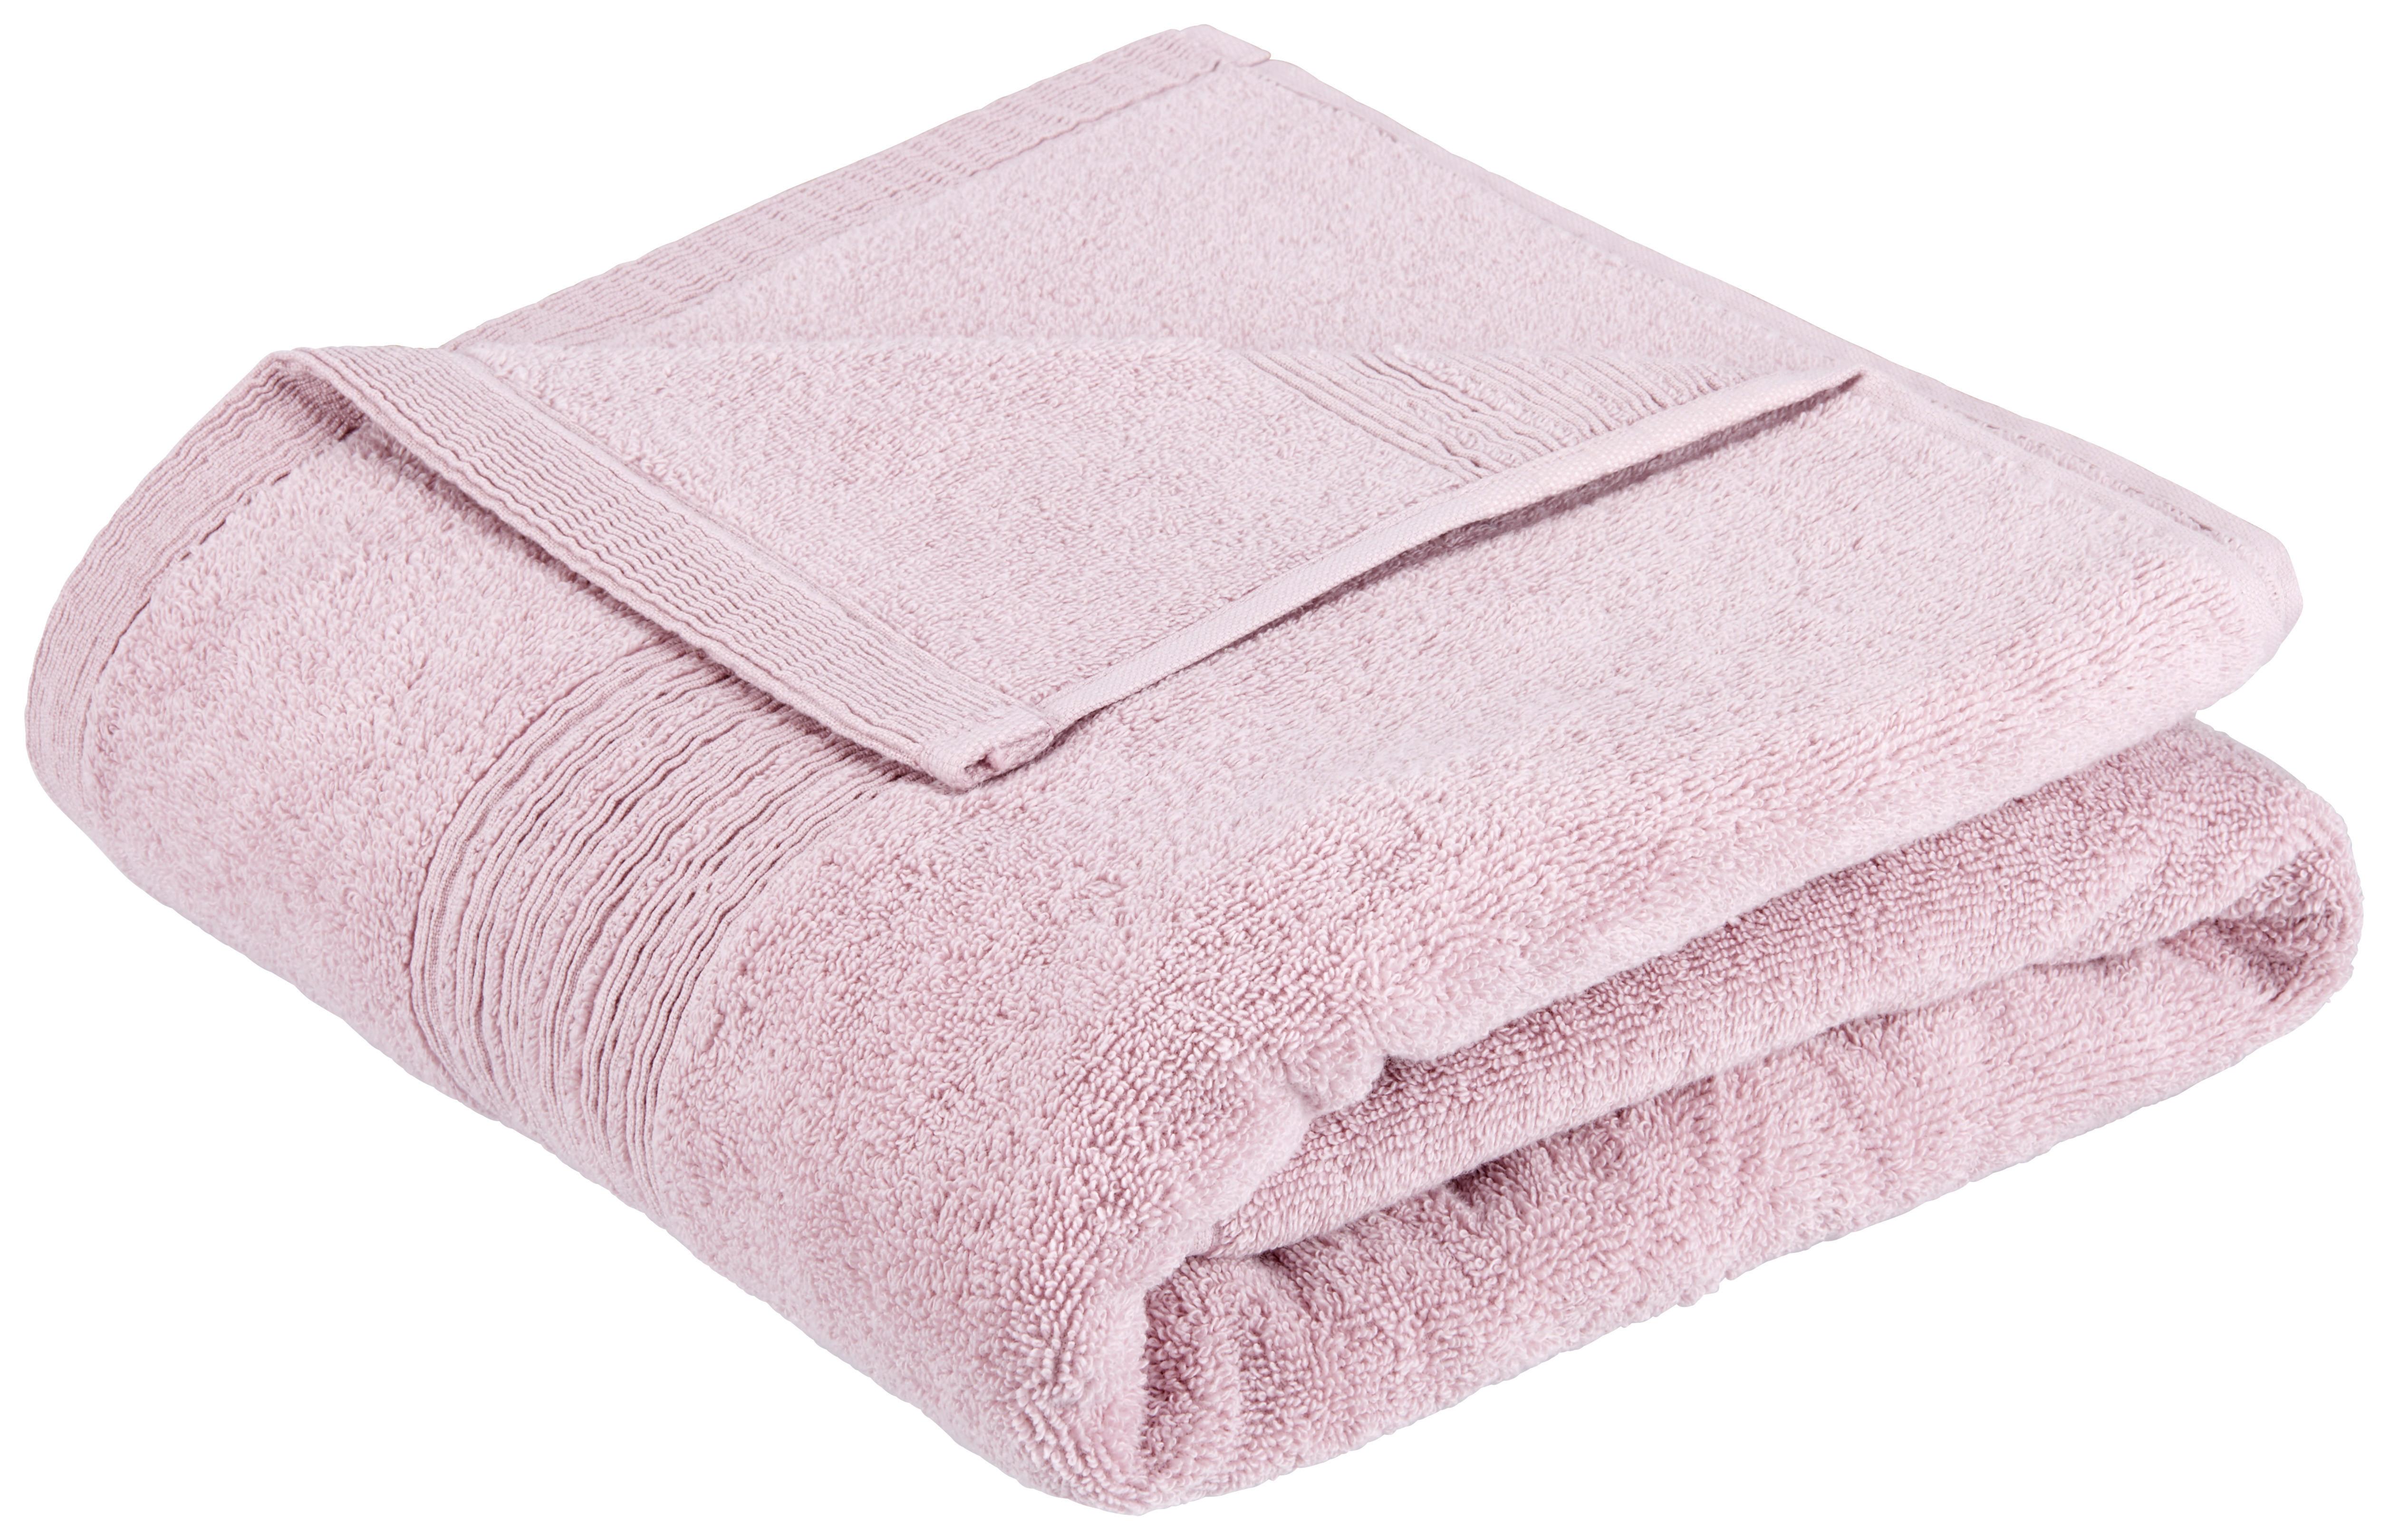 Brisača Za Kopanje Vivien - roza, Moderno, tekstil (90/180cm) - Premium Living